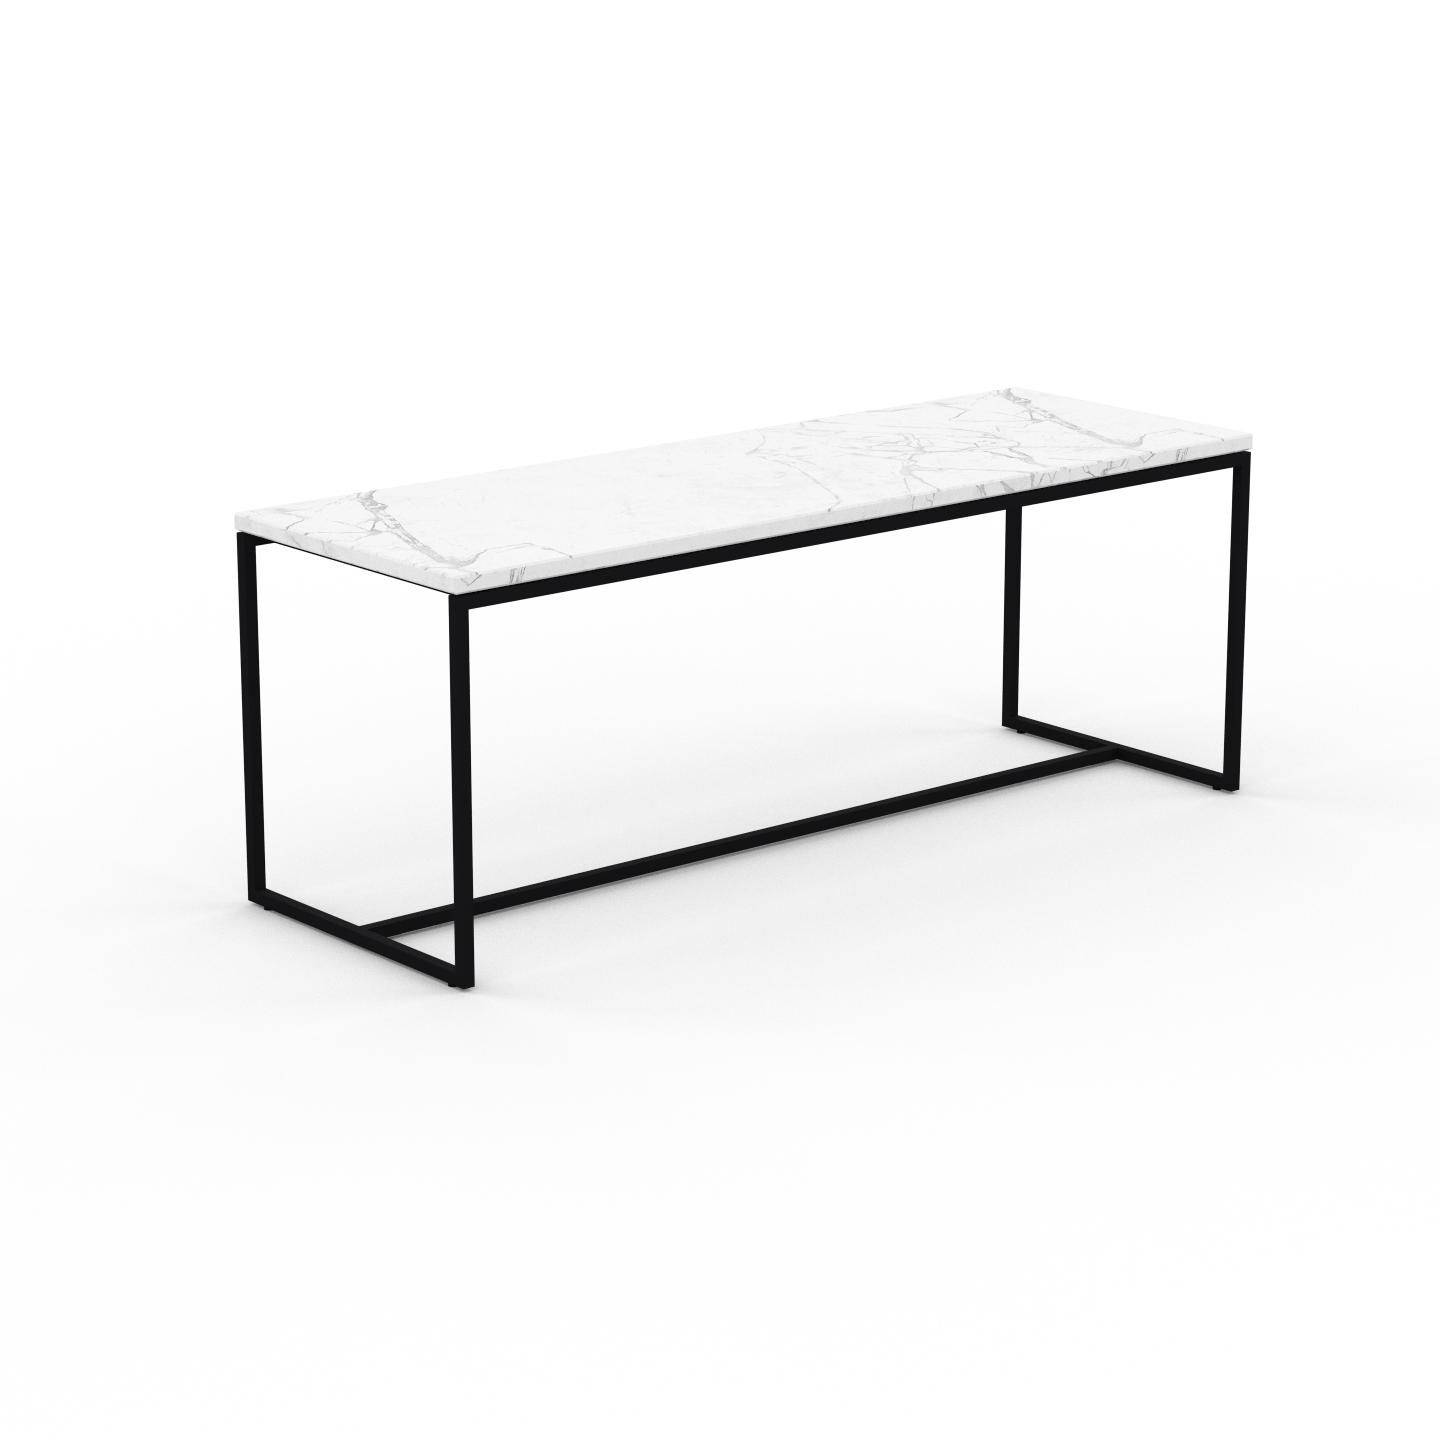 MYCS Beistelltisch Marmor, Weißer Carrara - Eleganter Nachttisch: Hochwertige Materialien, einzigartiges Design - 121 x 46 x 42 cm, Komplett anpassbar